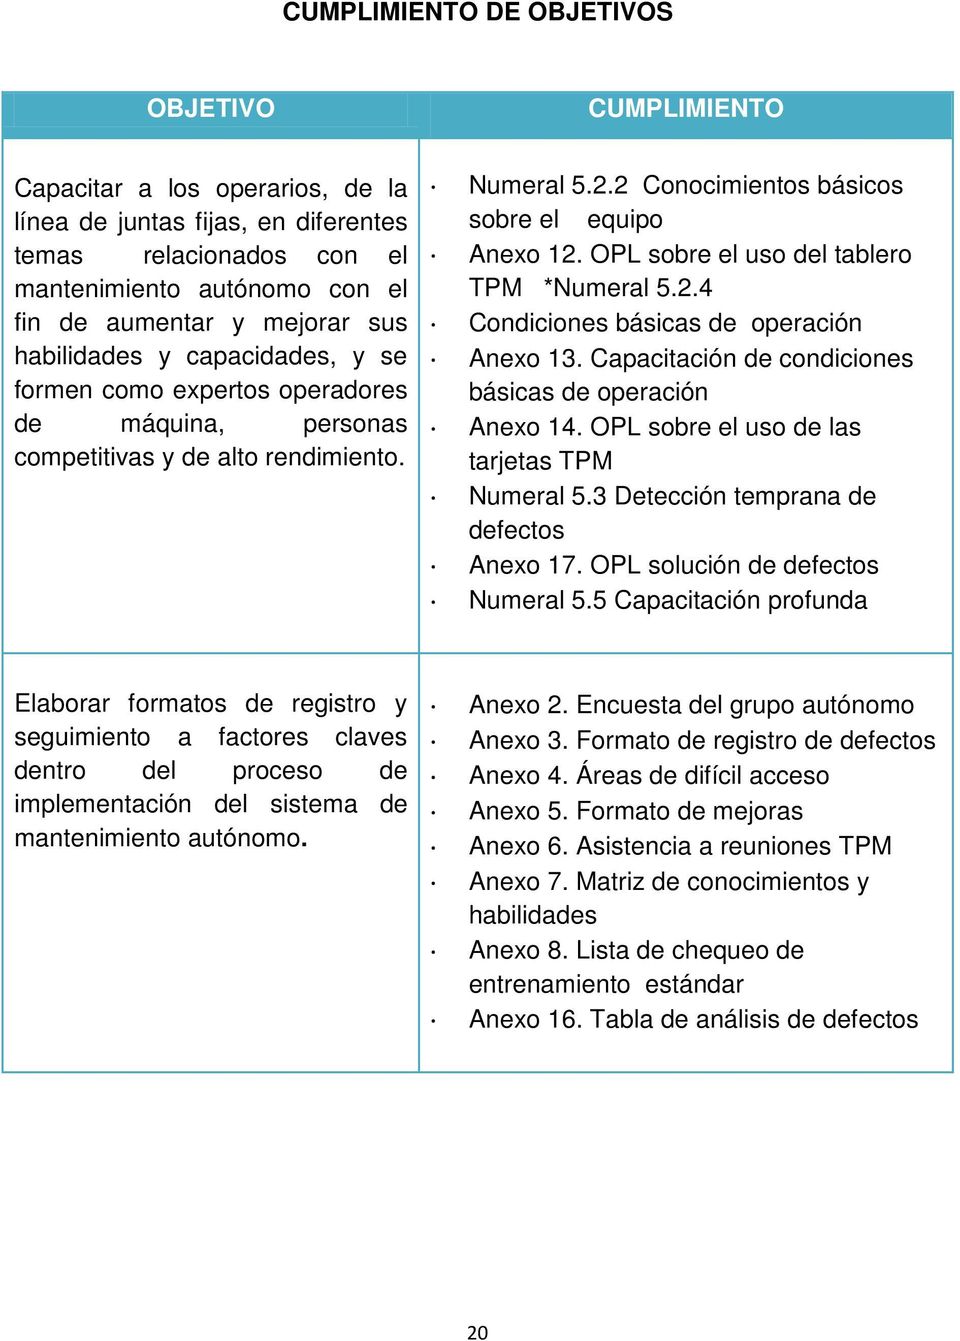 OPL sobre el uso del tablero TPM *Numeral 5.2.4 Condiciones básicas de operación Anexo 13. Capacitación de condiciones básicas de operación Anexo 14. OPL sobre el uso de las tarjetas TPM Numeral 5.